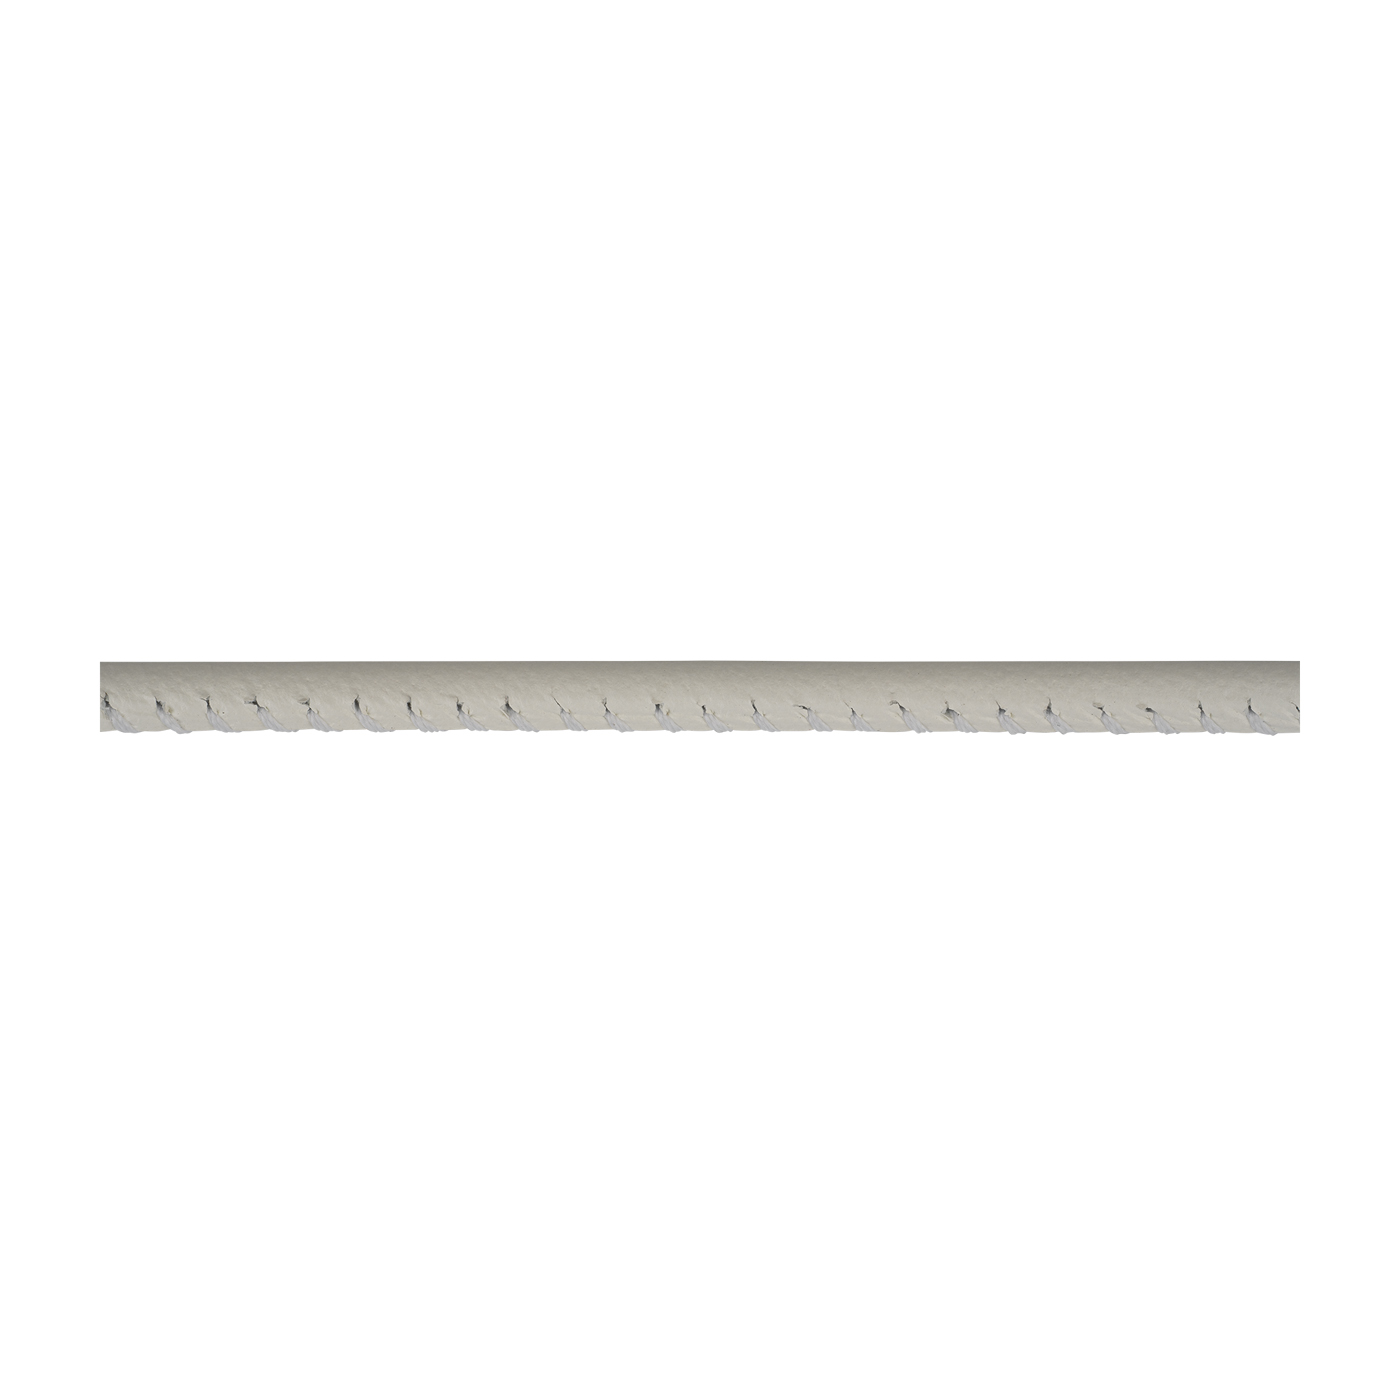 Lederband, weiß, ø 2,5 mm, aus Kalbsleder - 1 m